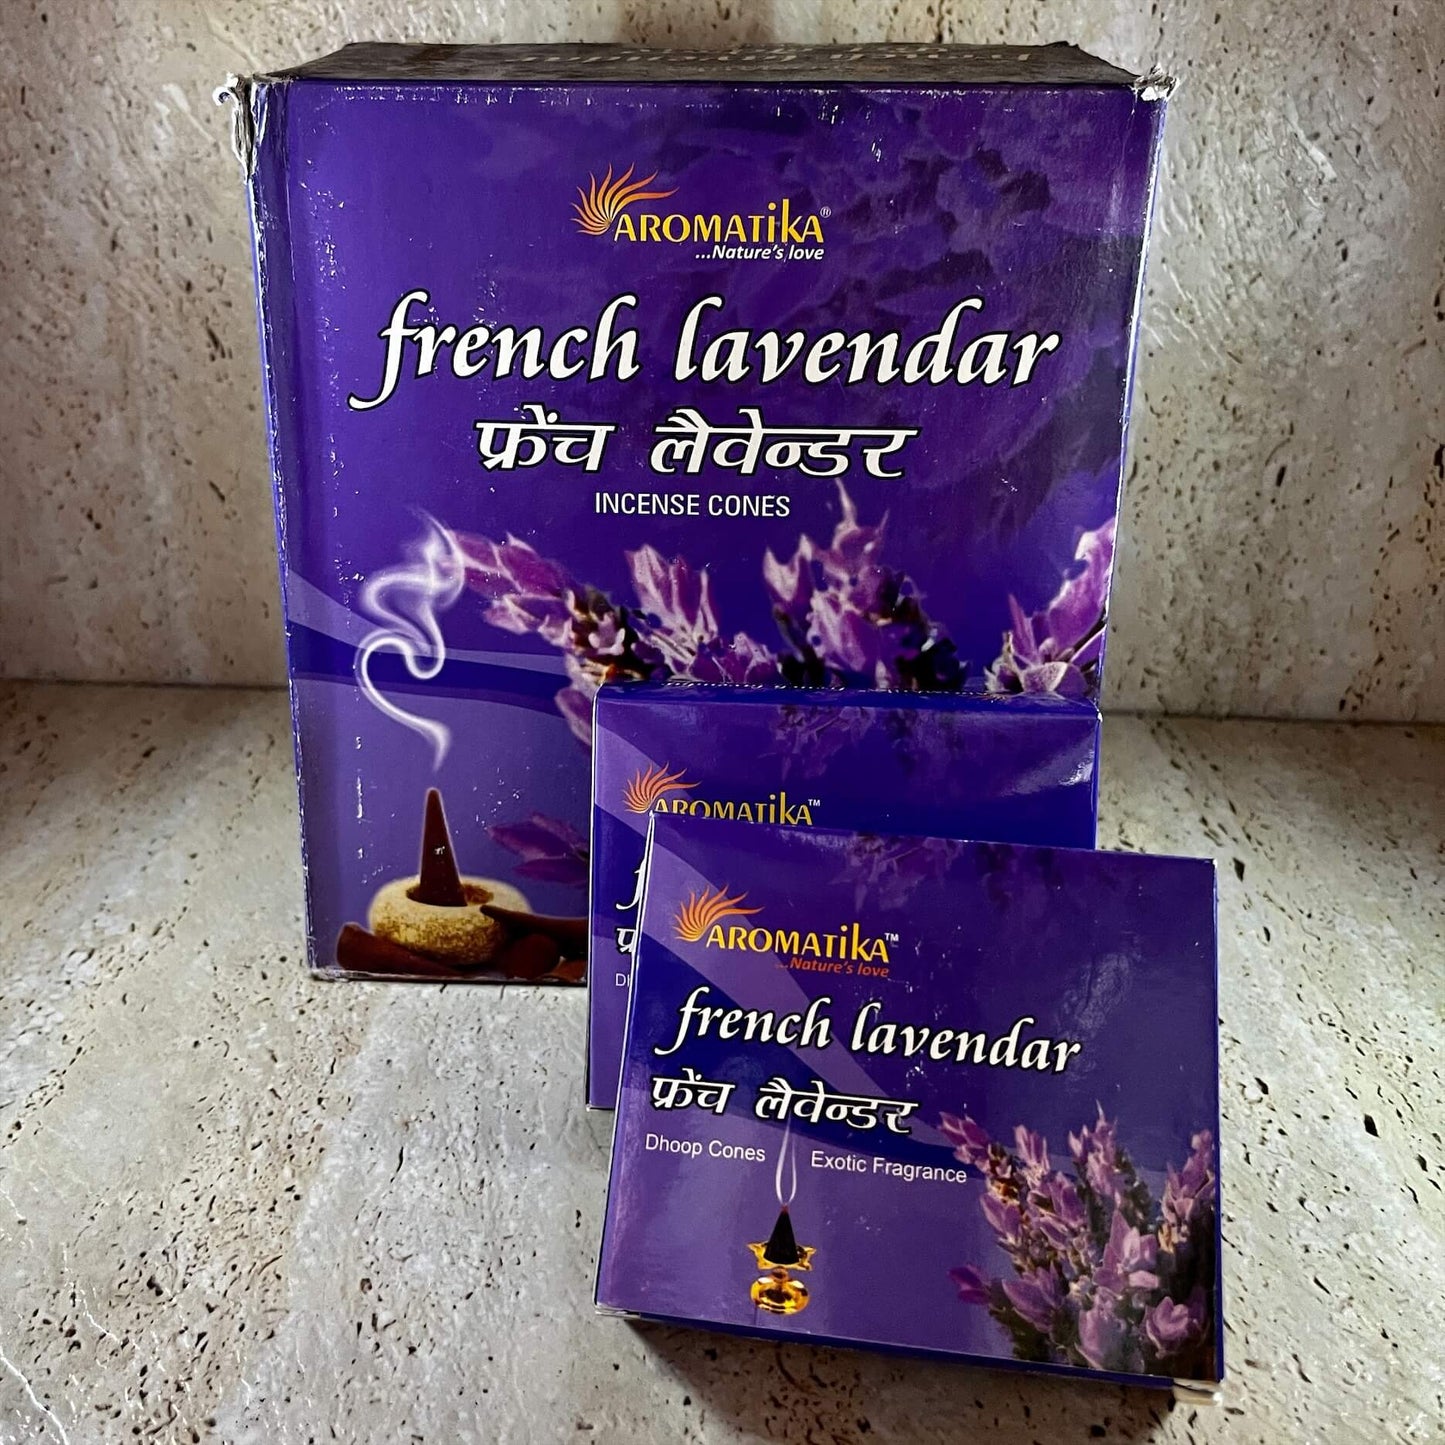 Aromatika French Lavender incense cones